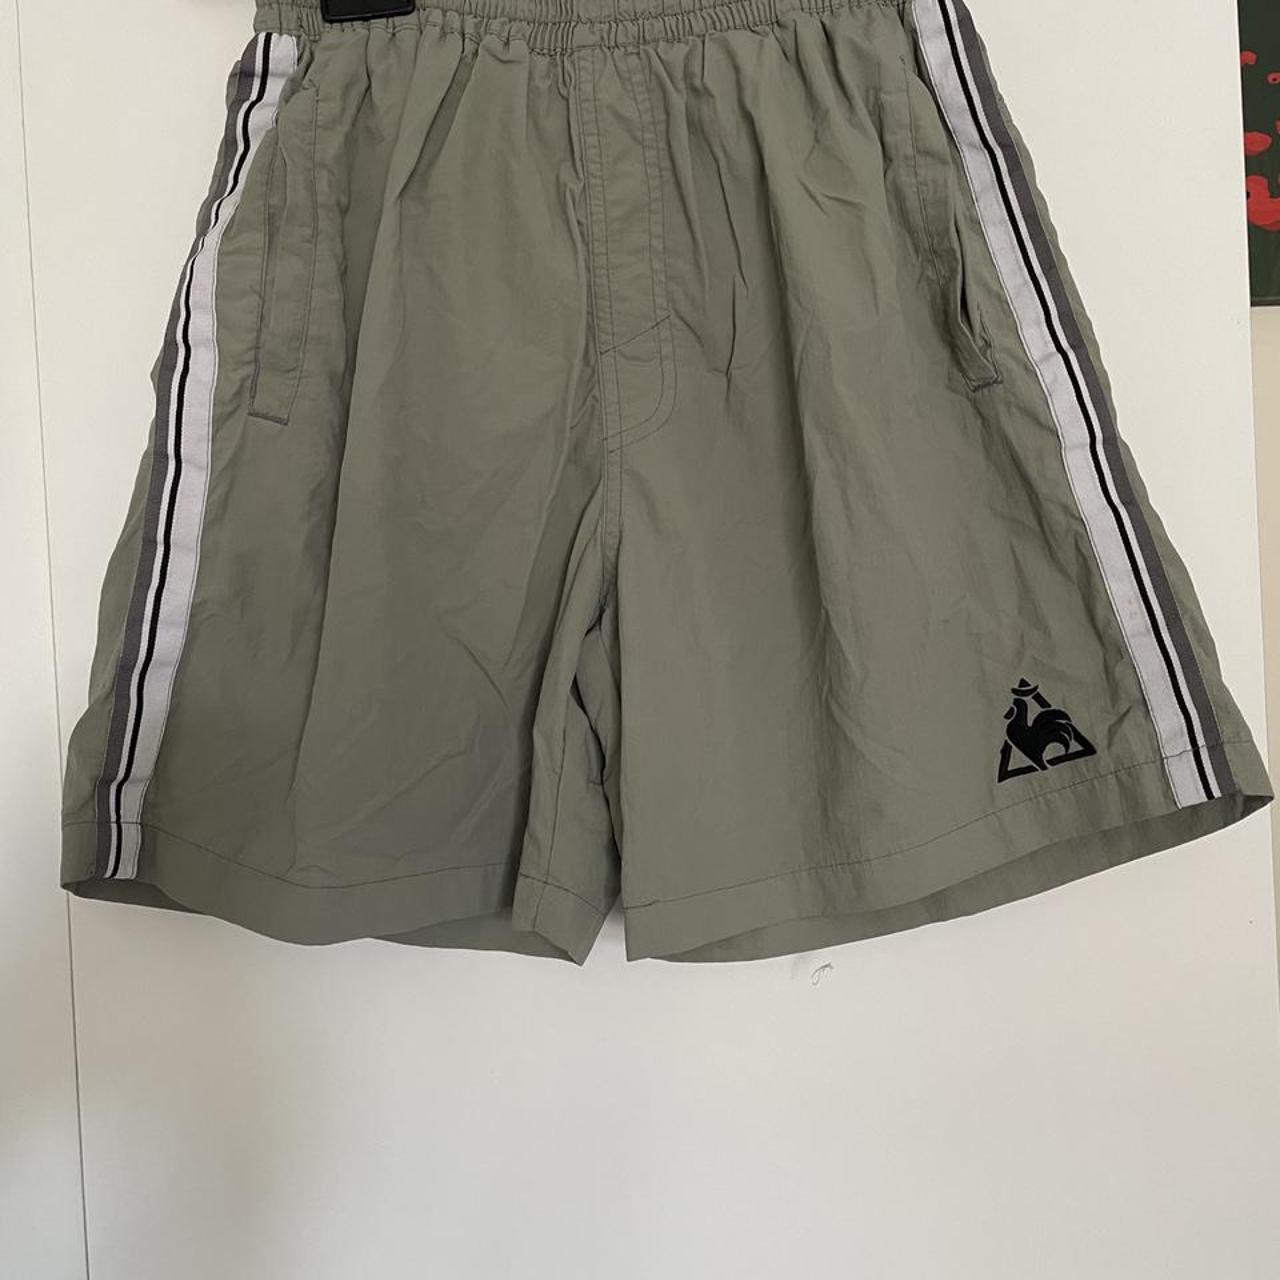 Product Image 1 - Vintage le coq sportif shorts